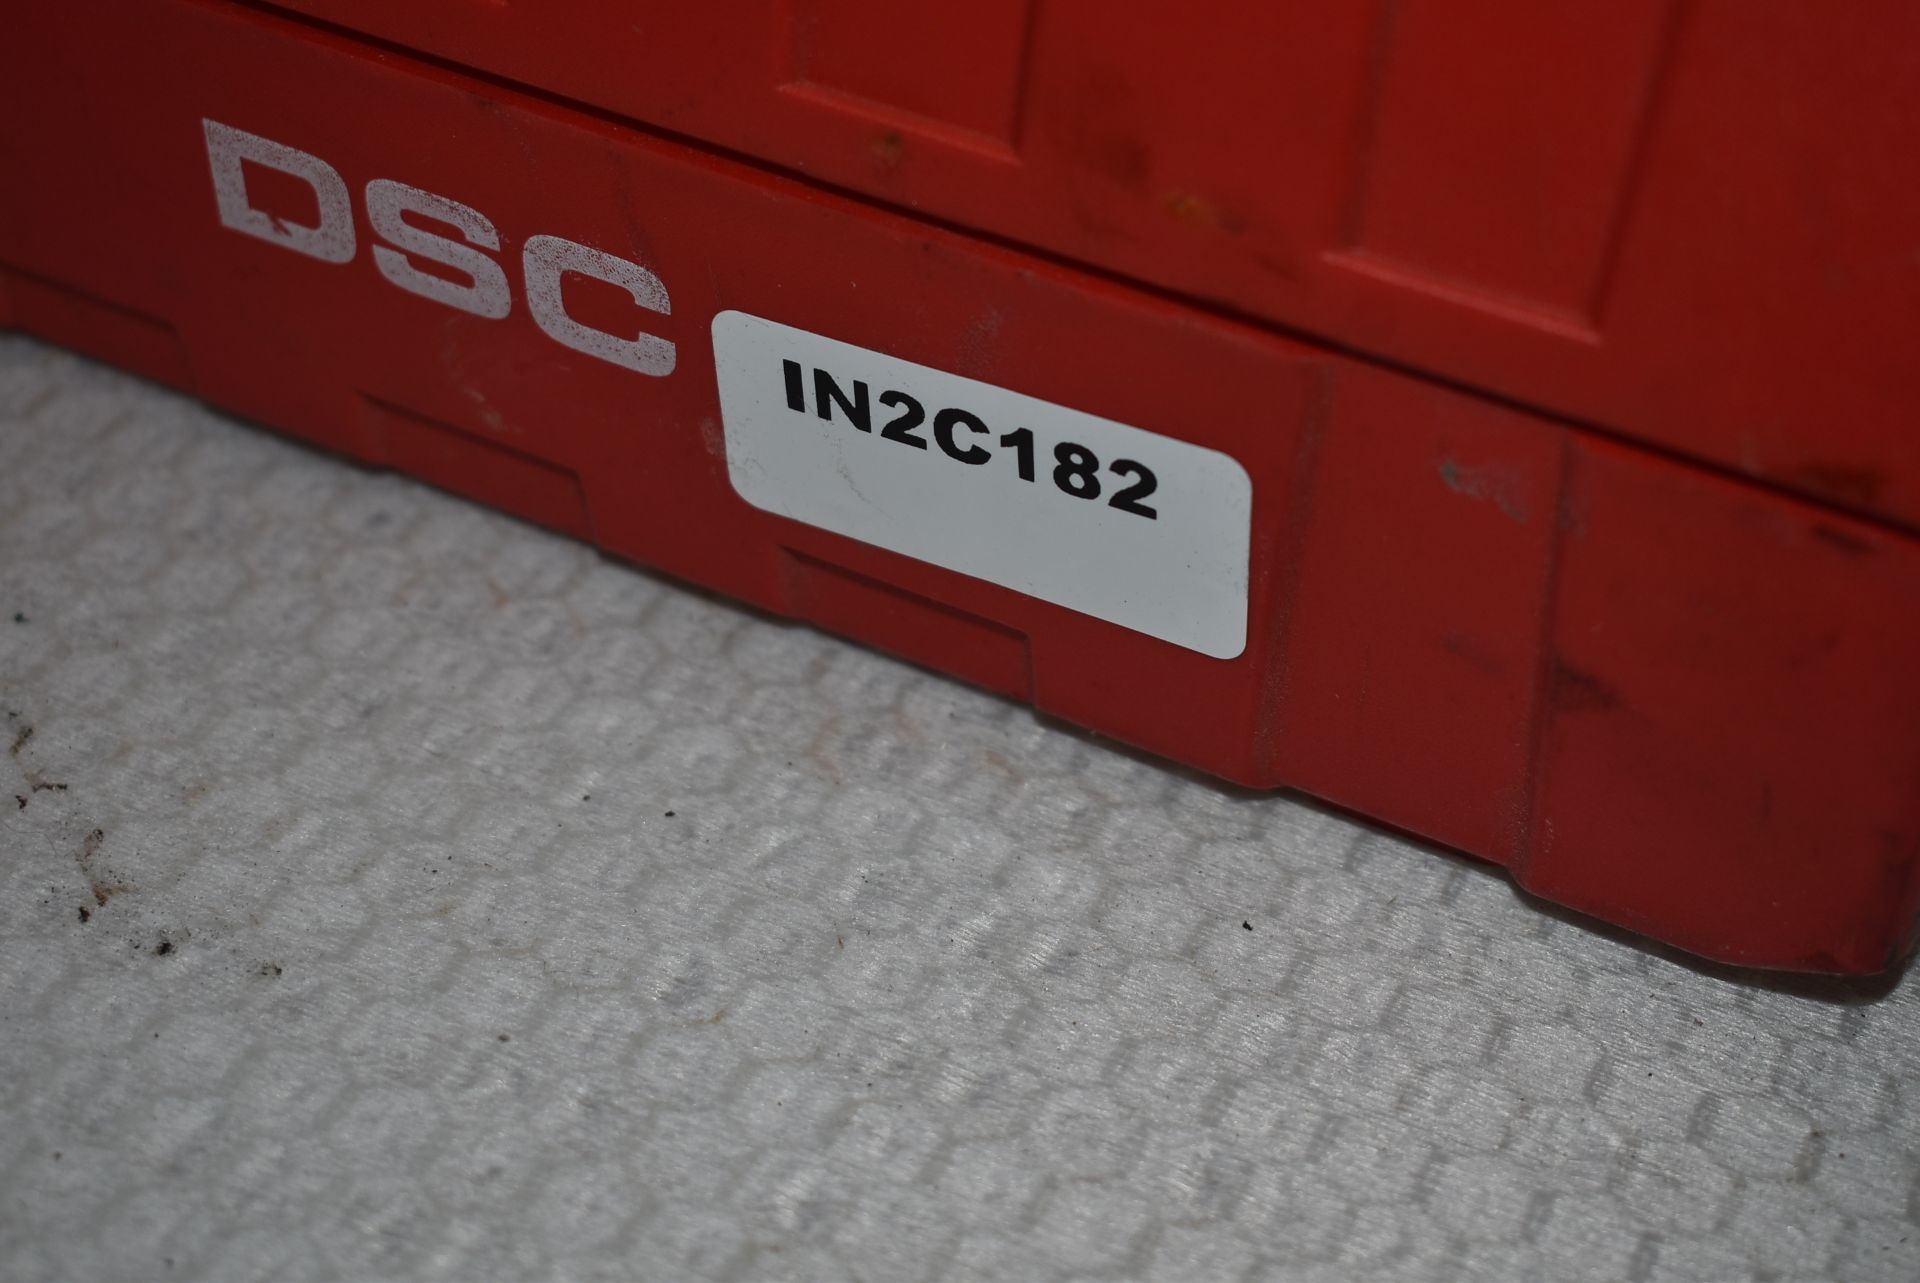 1 x Hilti DSC Foam Dispenser With Case - Ref: C182 - CL816 - Location: Altrincham WA14 - Image 4 of 7